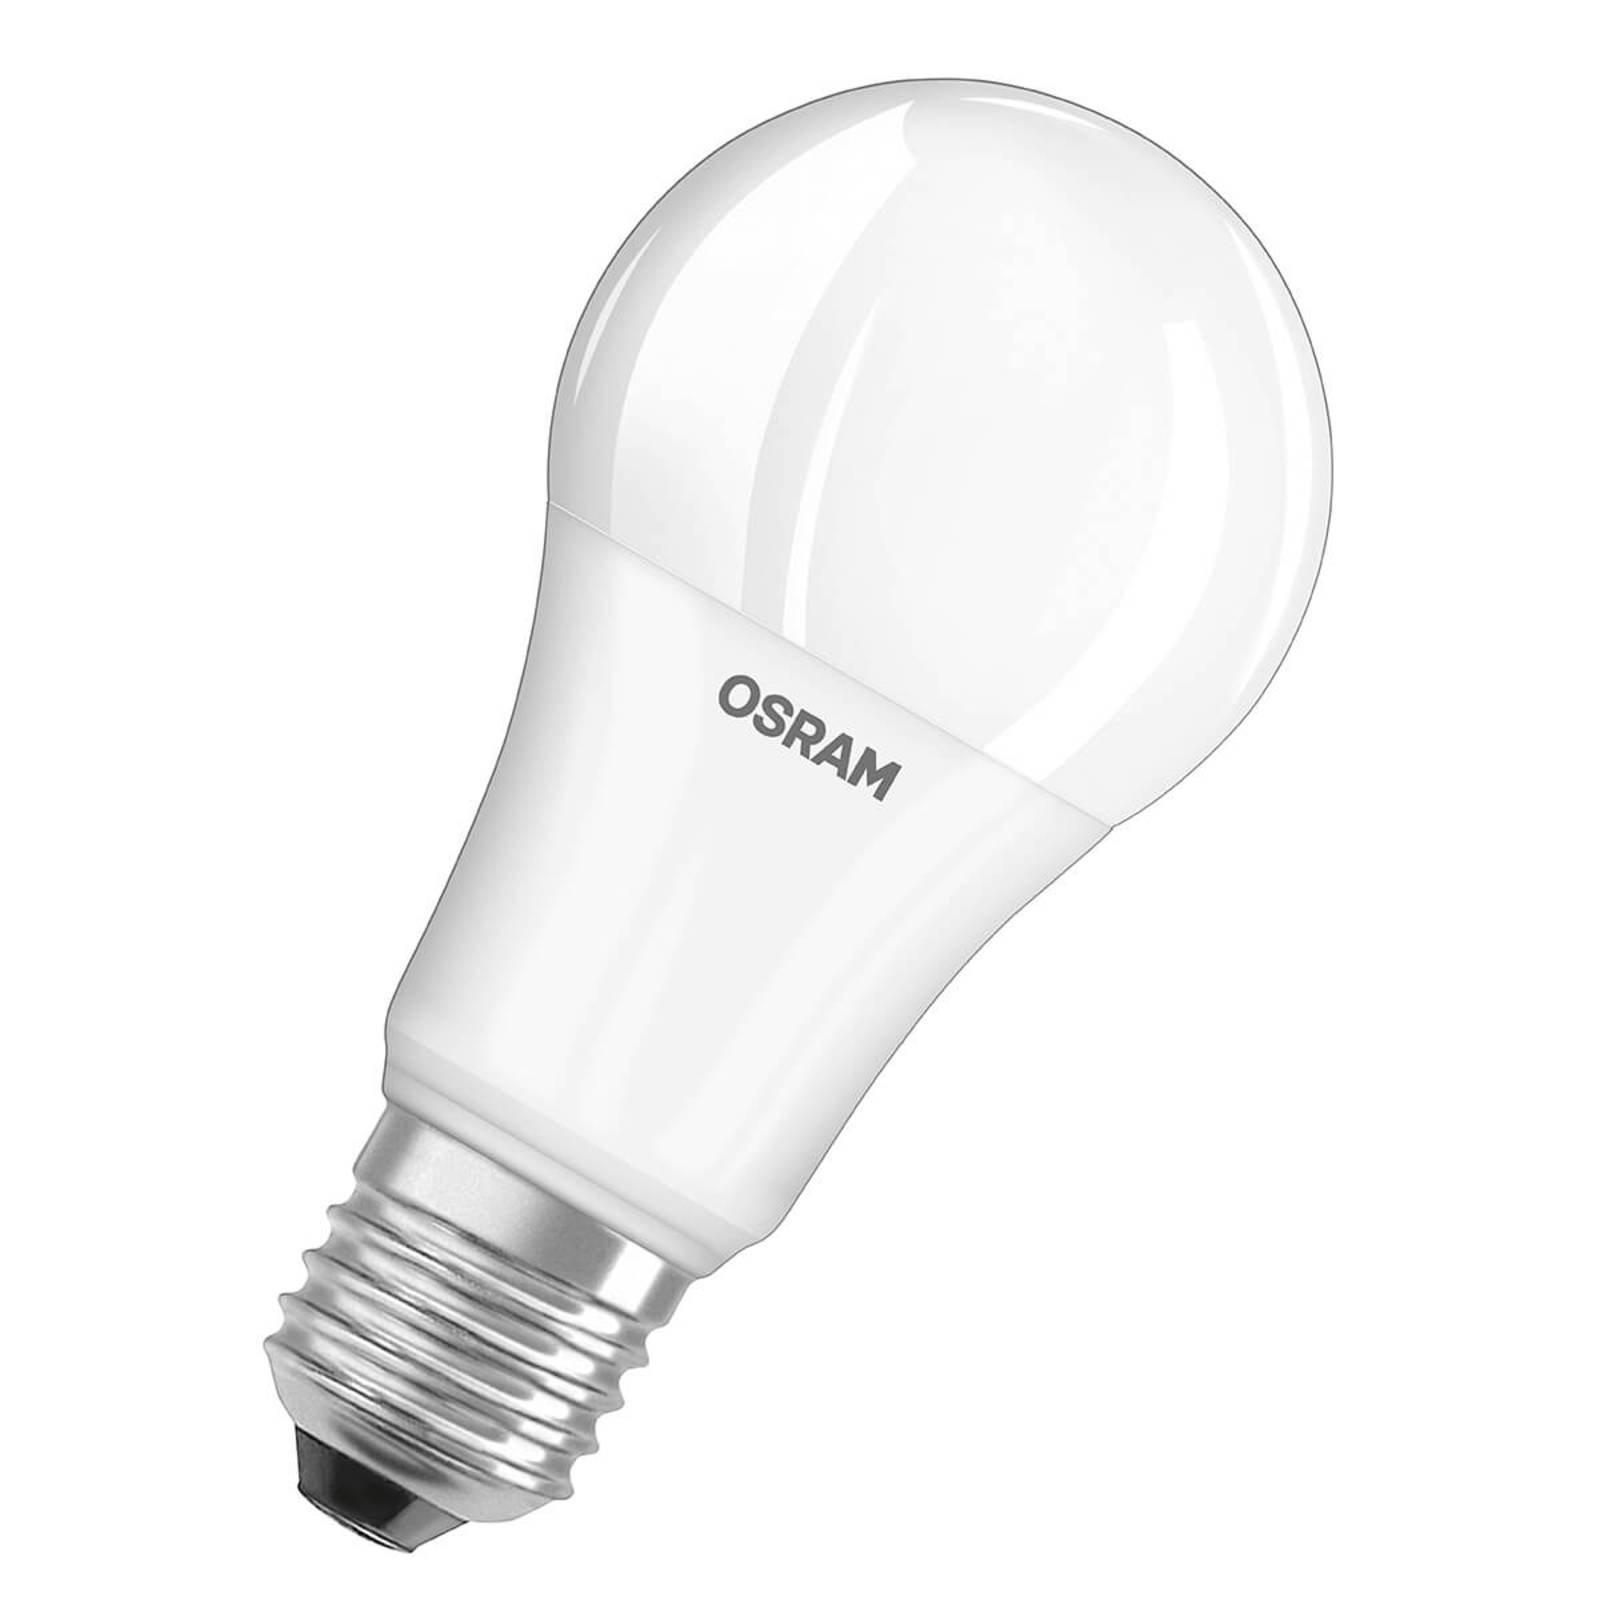 OSRAM Ampoule LED E27 14W, blanc chaud, kit de 3